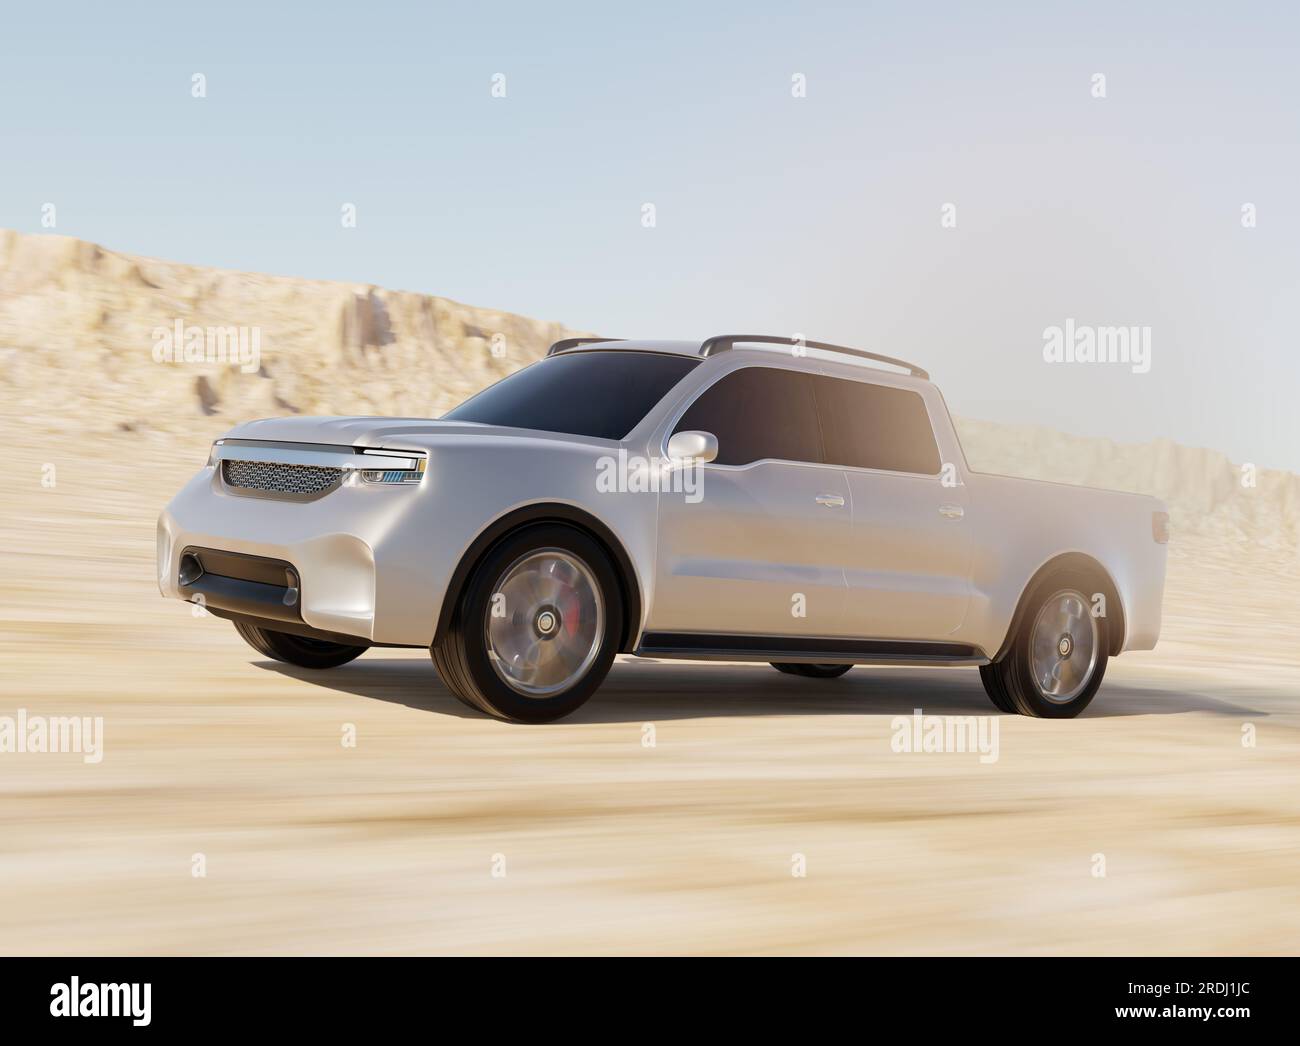 Camionnette électrique argentée conduisant dans le désert. Conception générique. Image de rendu 3D. Banque D'Images